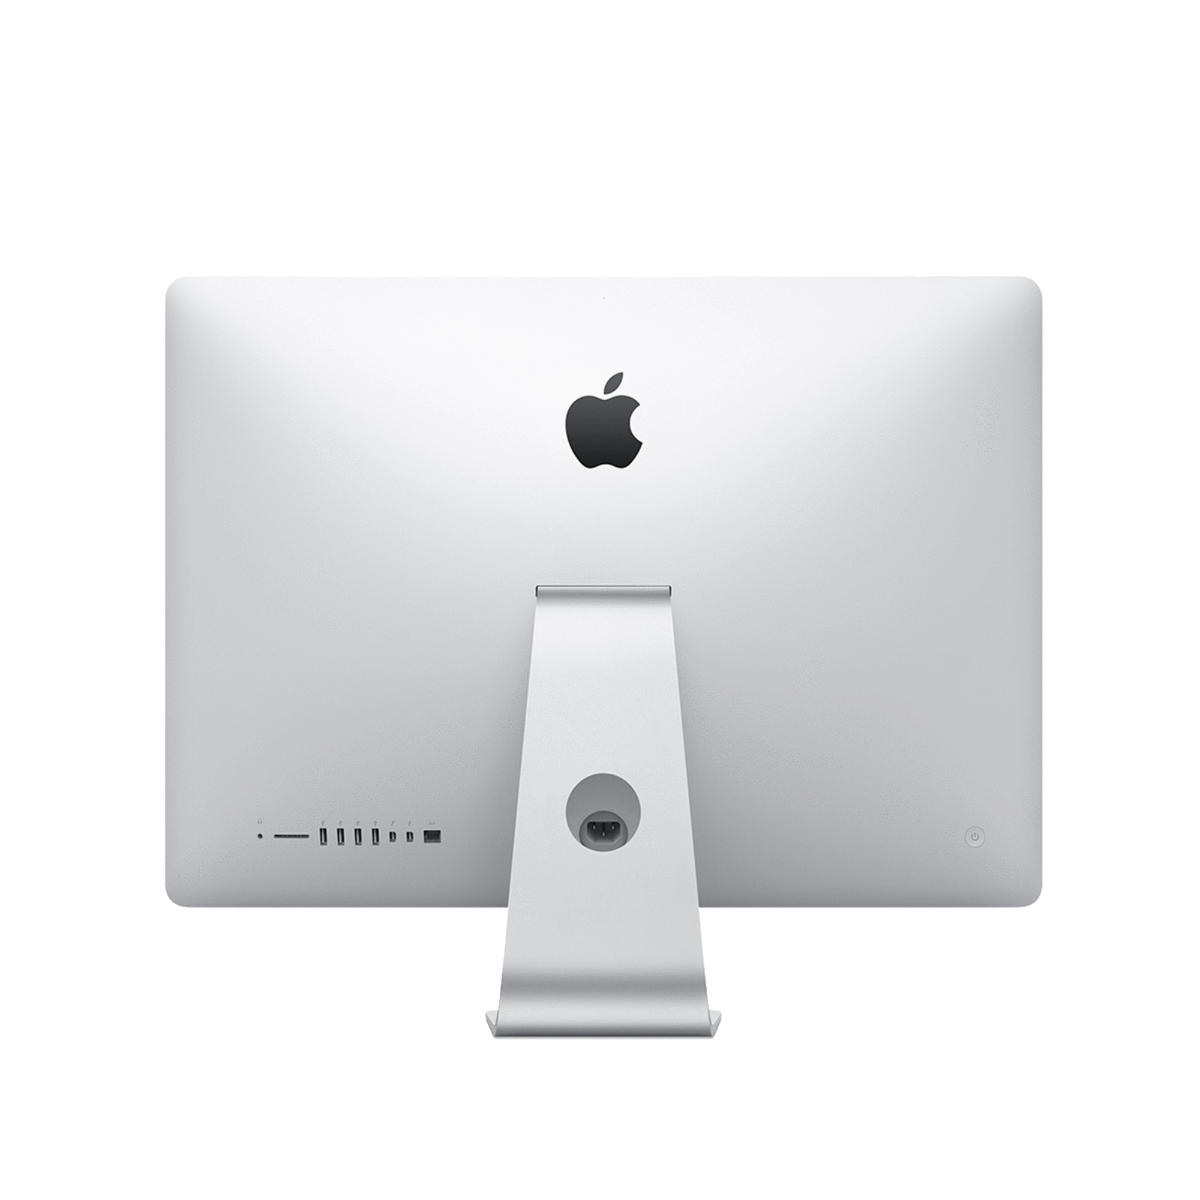 Refurbished iMac 21.5" i5 3.0 8GB 256GB SSD 2017 - test-product-media-liquid1